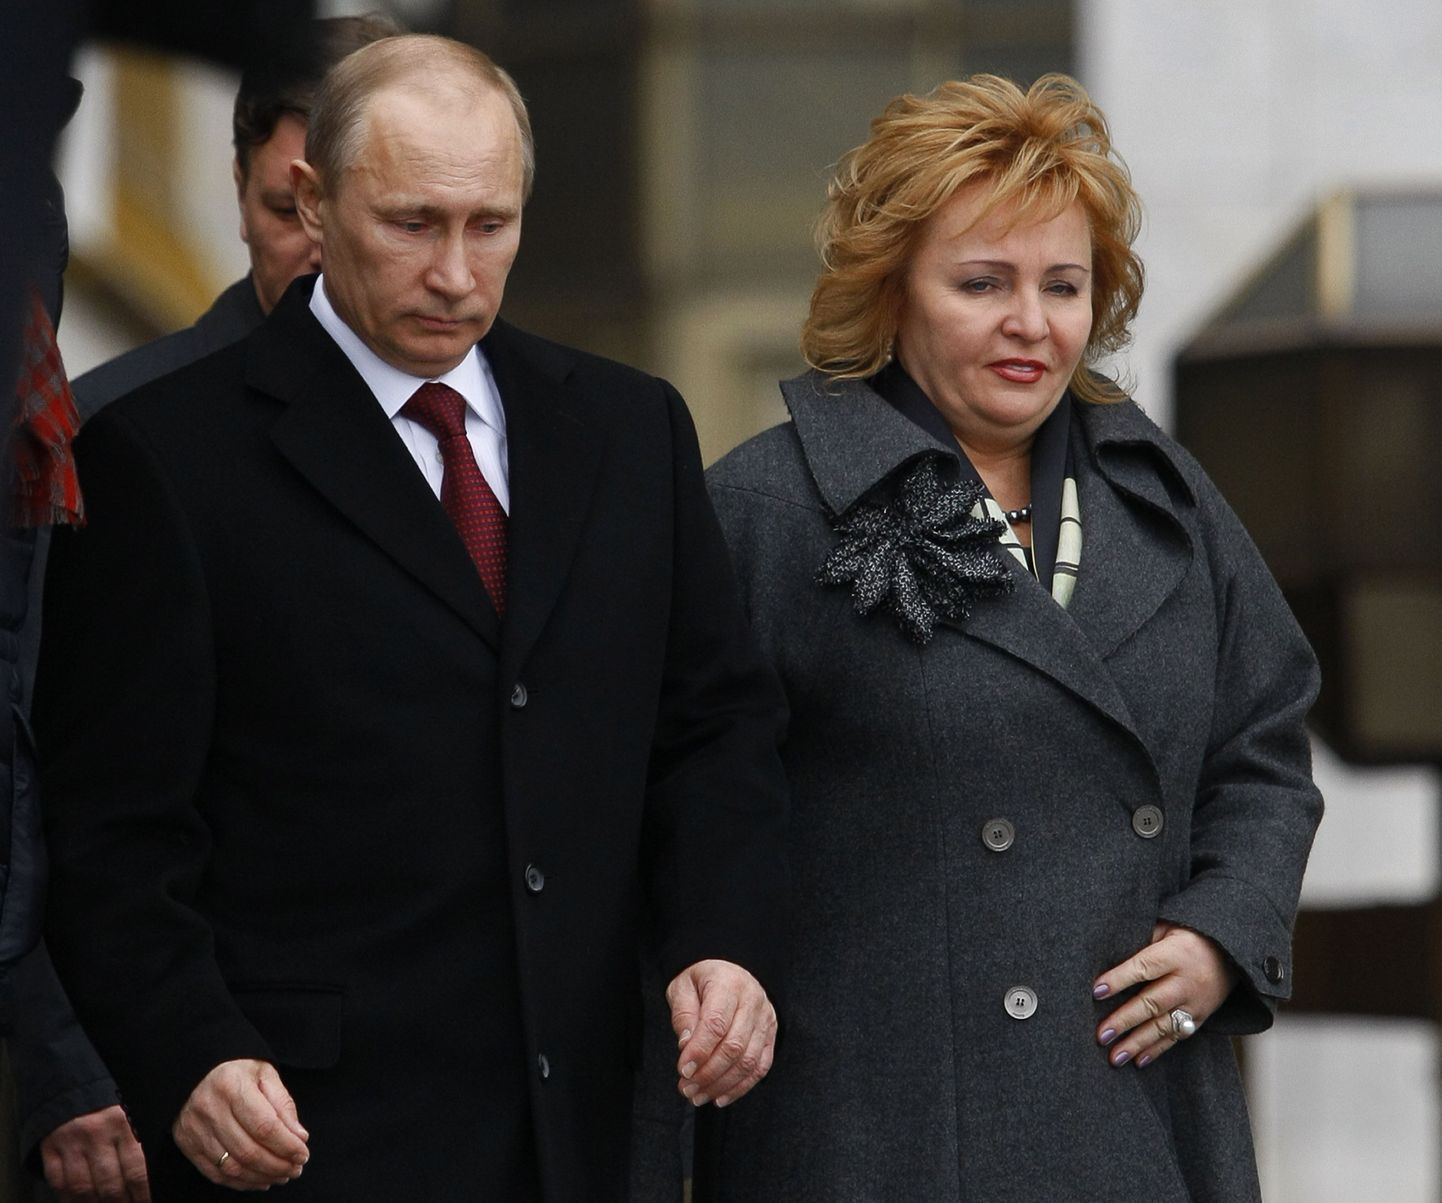 Lisaks tütrele hoidub enamasti avalikkuse tähelepanust ka Venemaa presidendi Vladimir Putini abikaasa Ljudmila (paremal). Pildil lahkuvad abikaasad möödunud aasta presidendivalimiste päeval, 4. märtsil  Moskva valimisjaoskonnast.